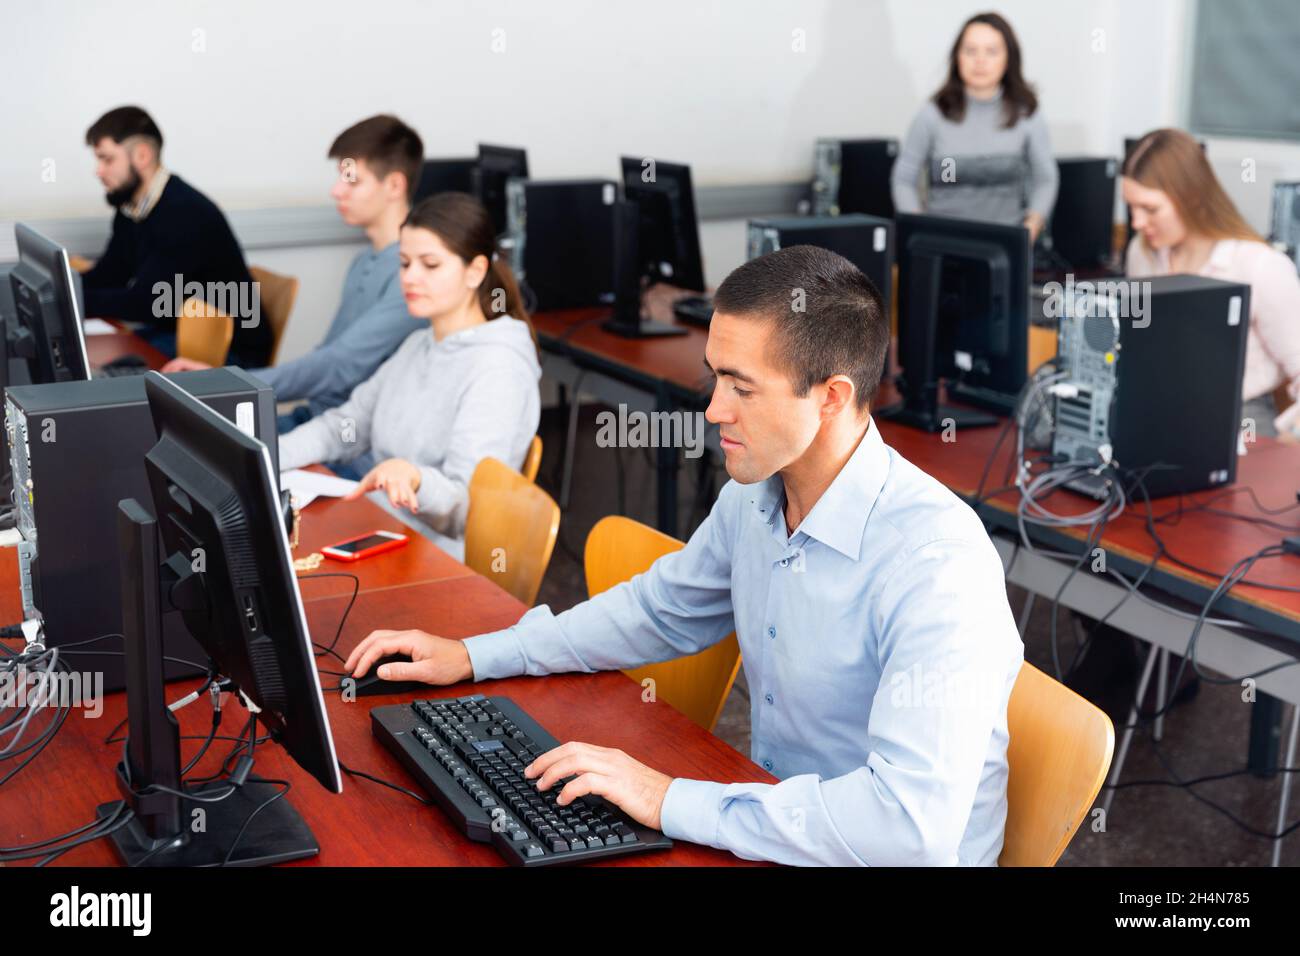 Cours d'informatique pour adultes en classe Banque D'Images